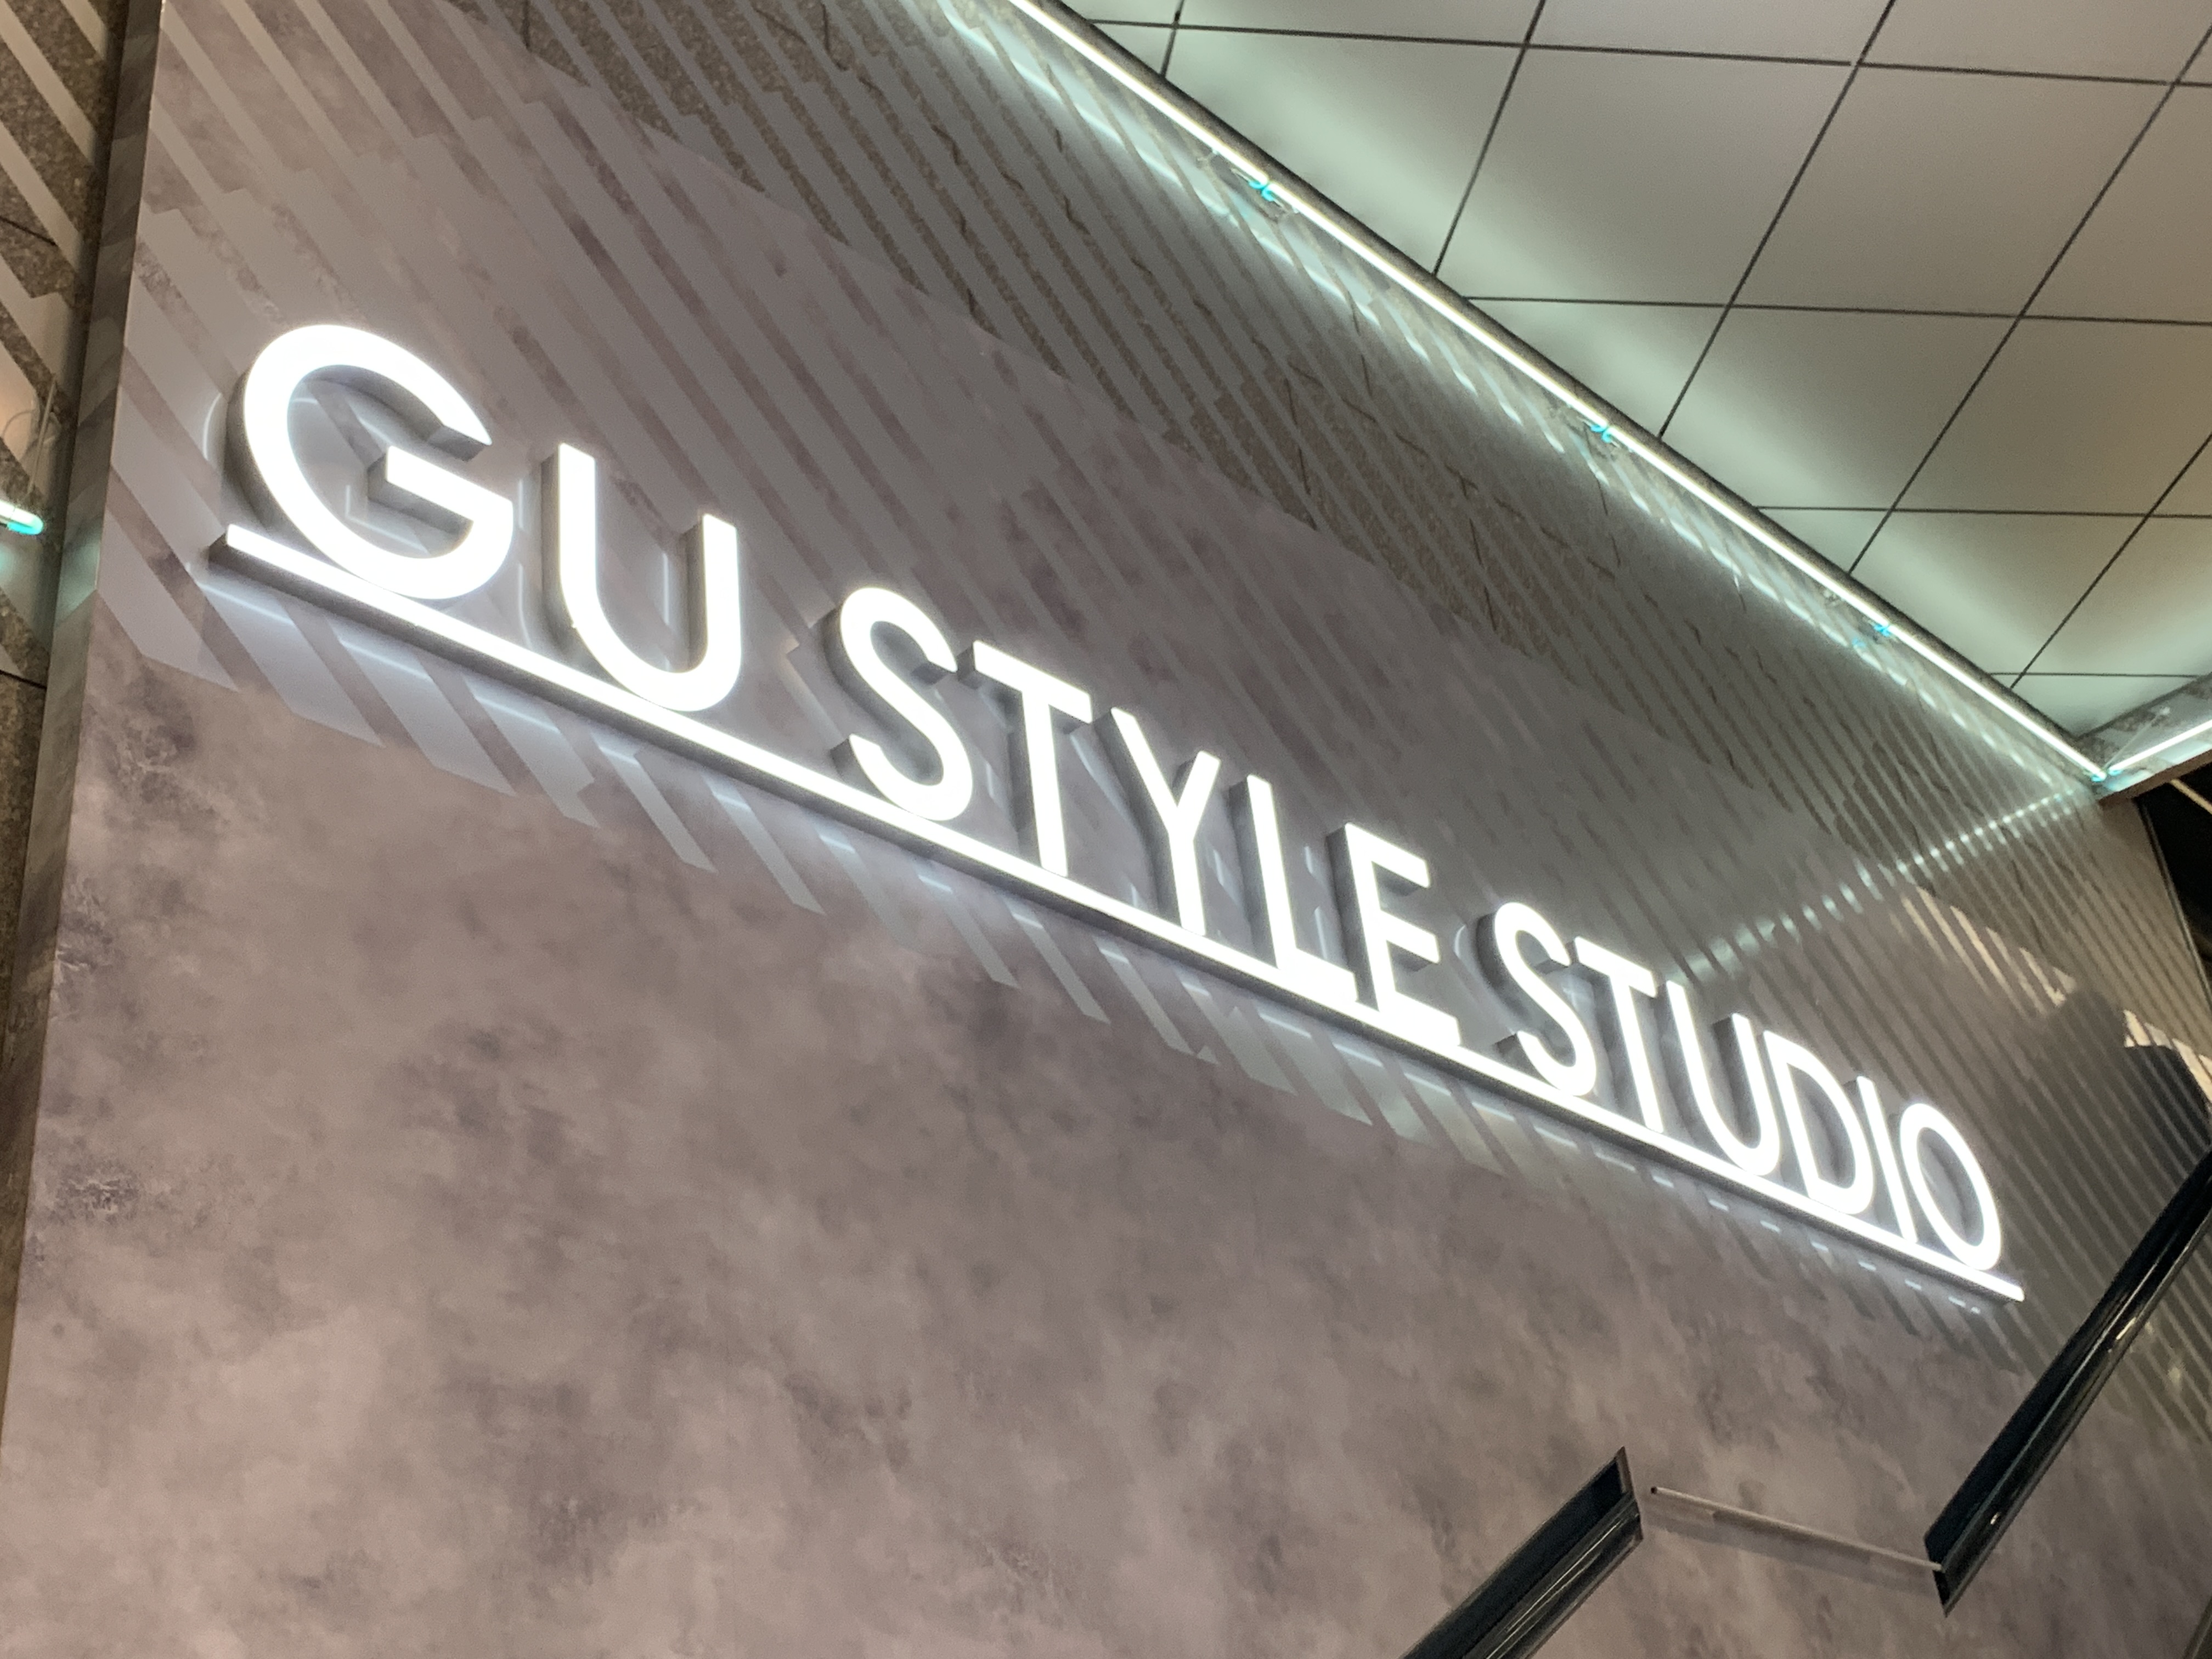 れぽ デジタルとの融合 Gu Style Studioへ行ったみました ネクスター株式会社 若者マーケティング 広告 採用支援